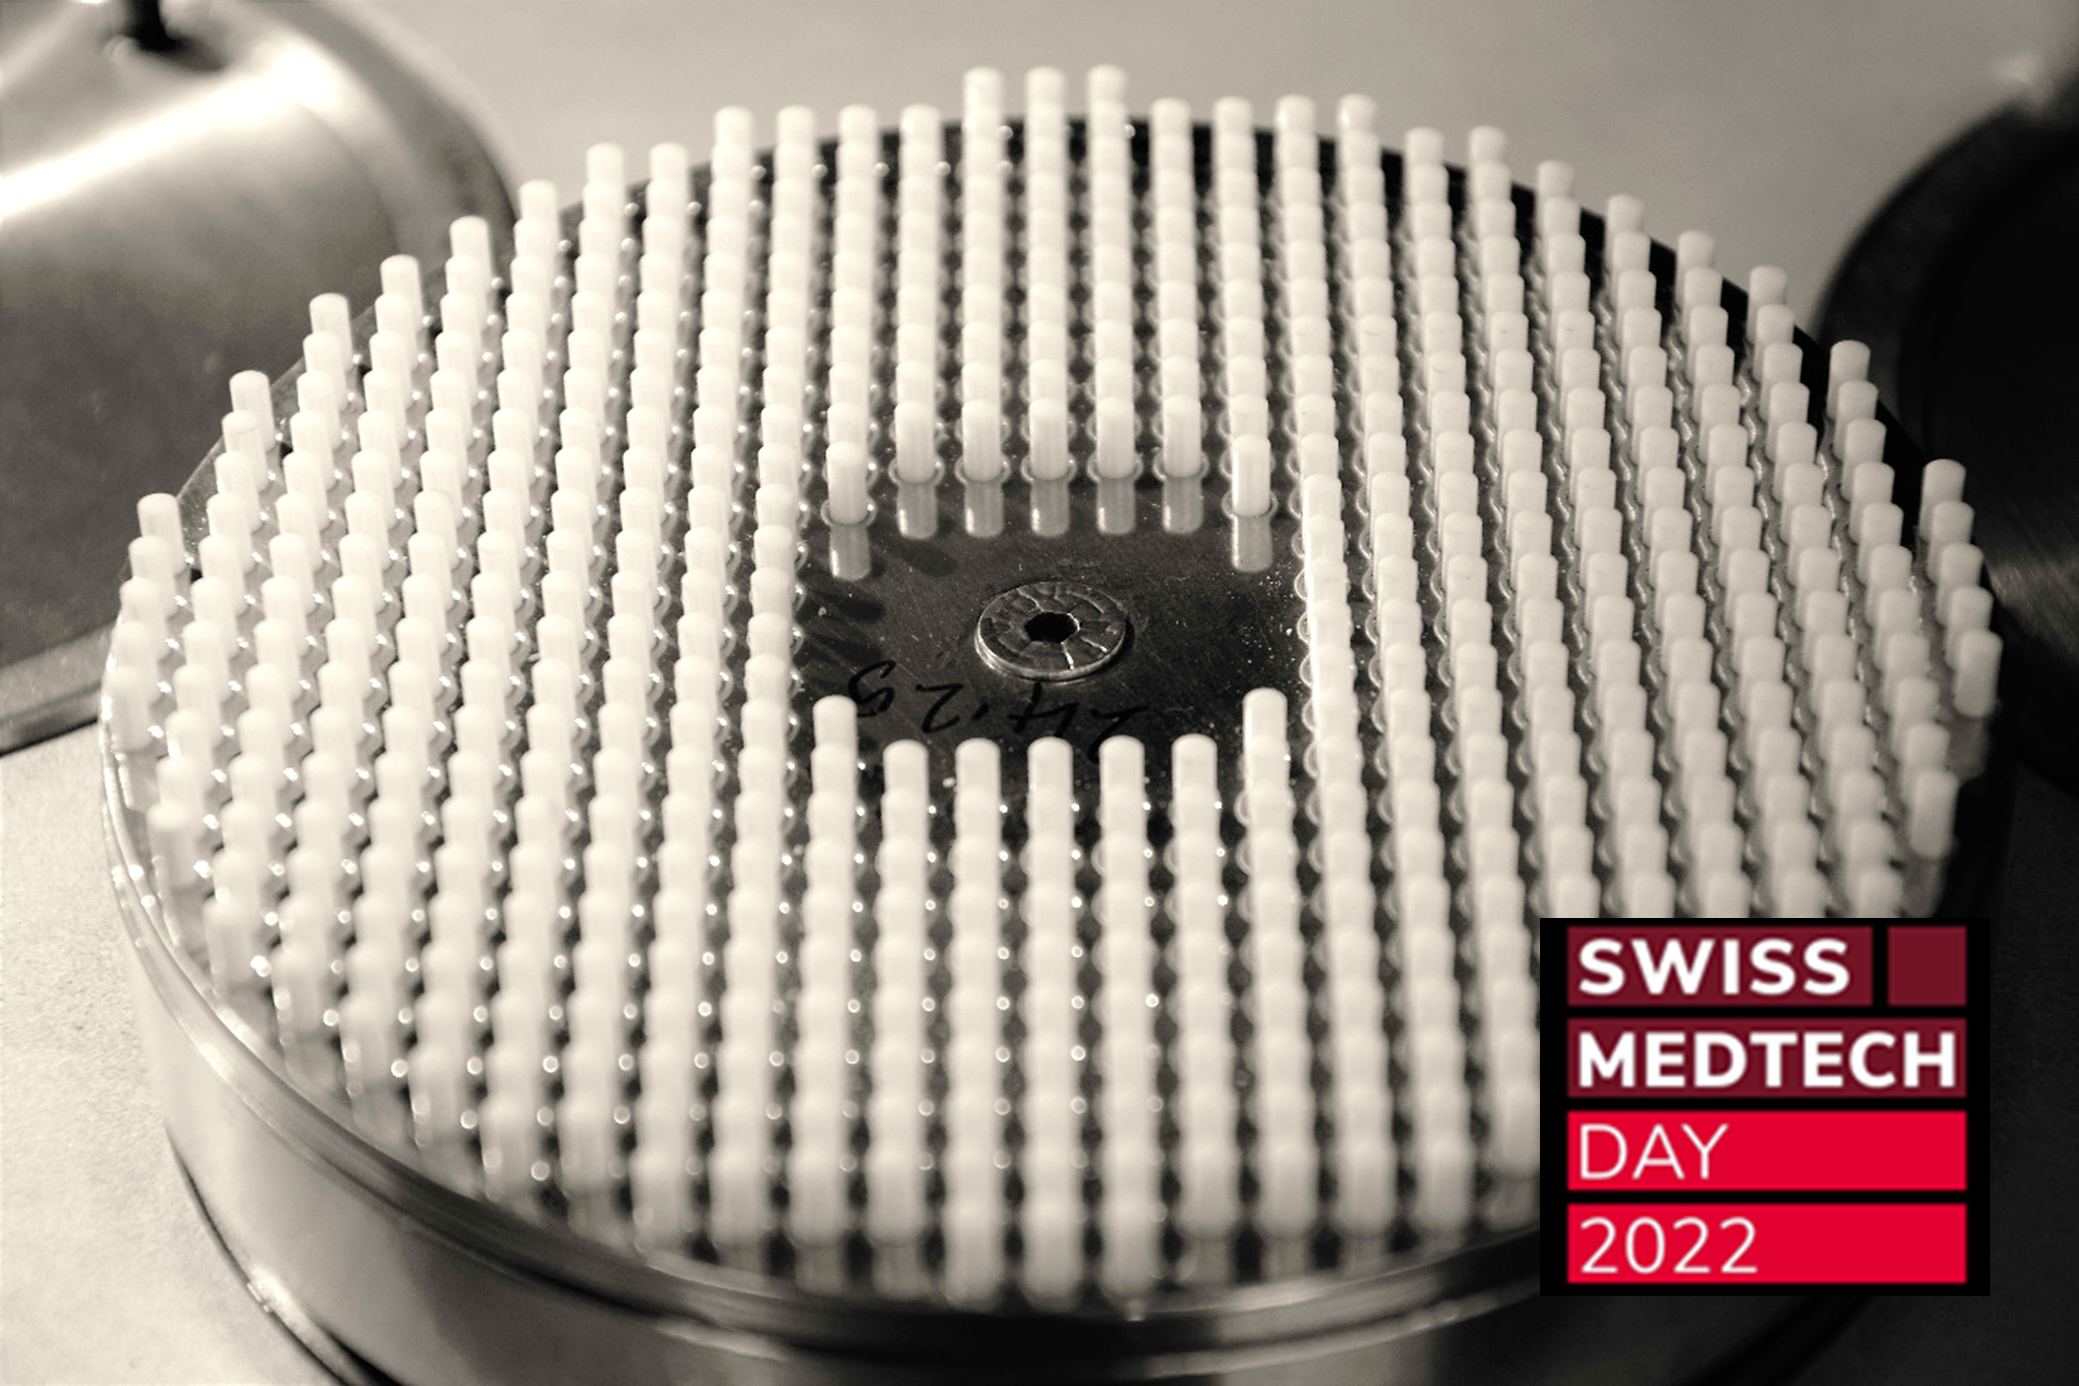 Besuchen Sie uns am Swiss Medtech Day am 14.06. in Bern!